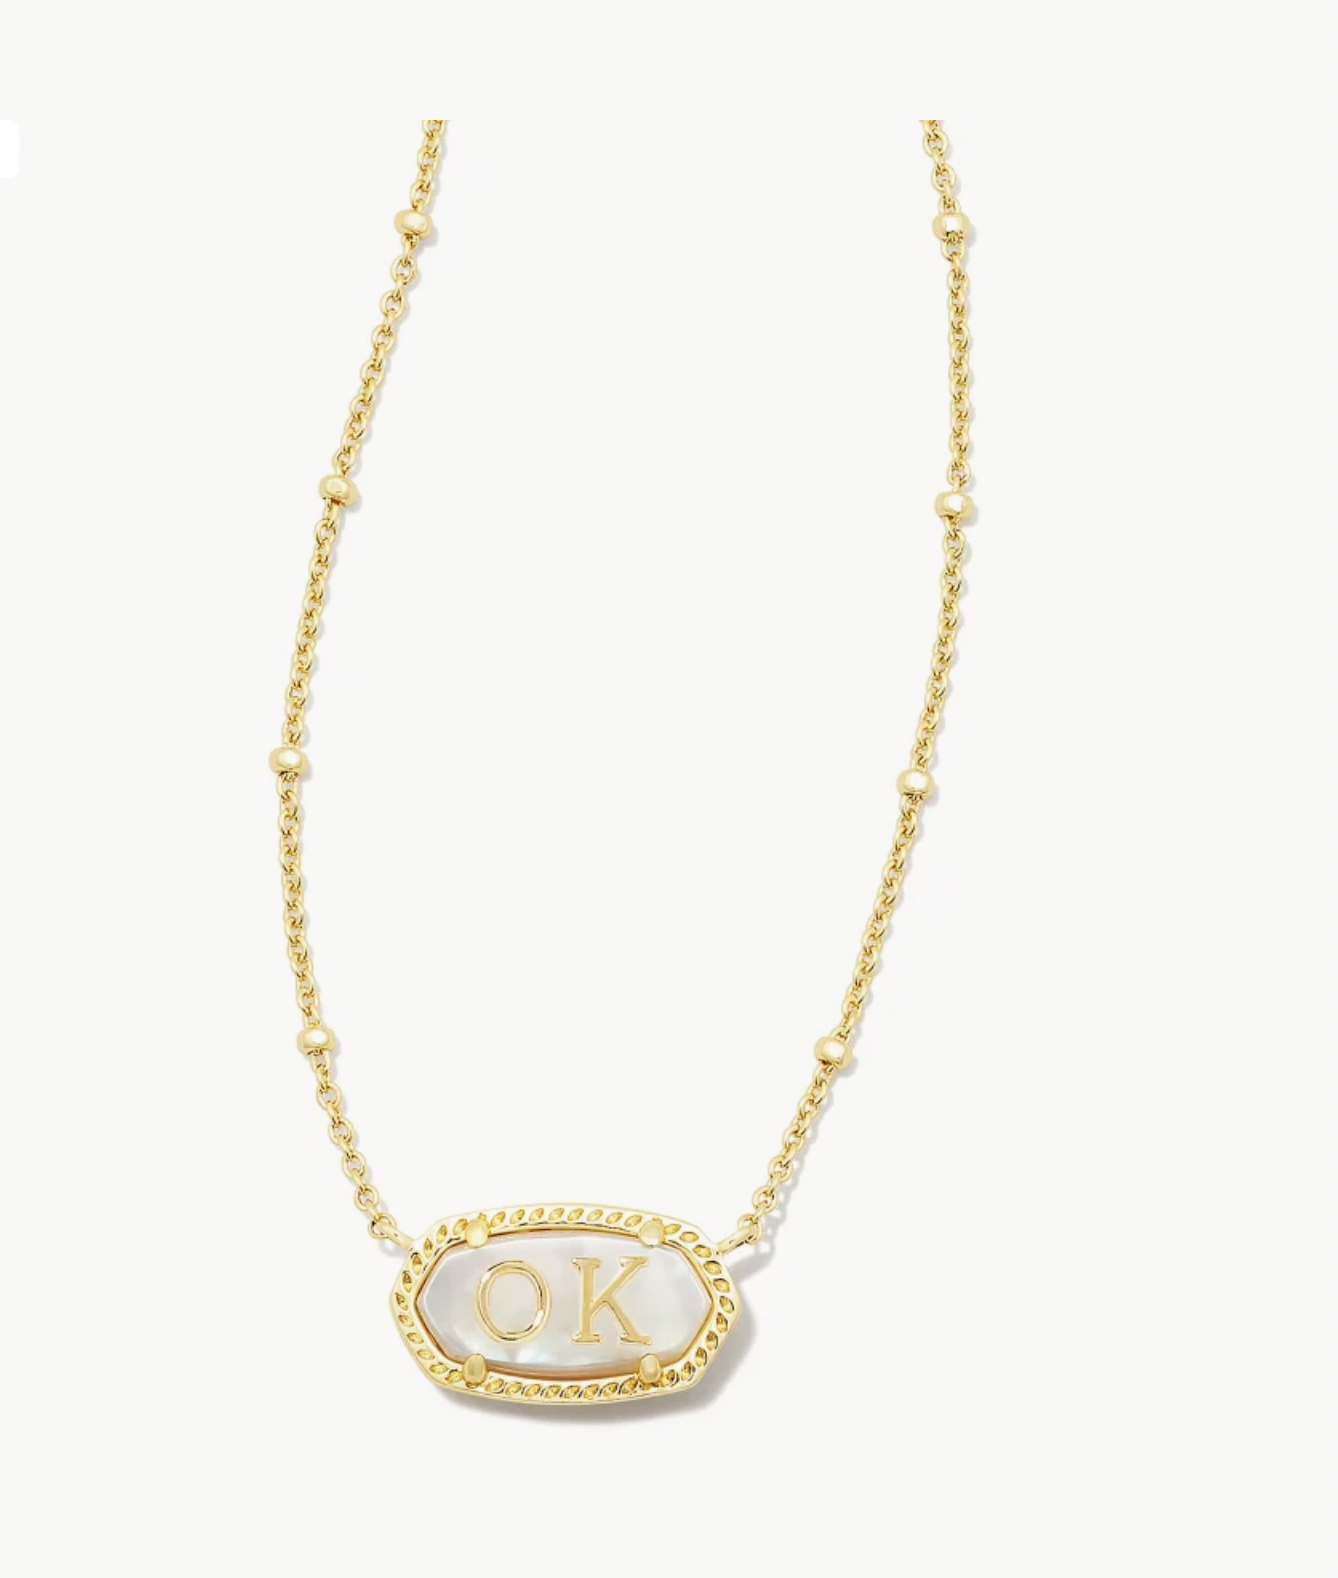 Elisa Ivory Gold Oklahoma Necklace